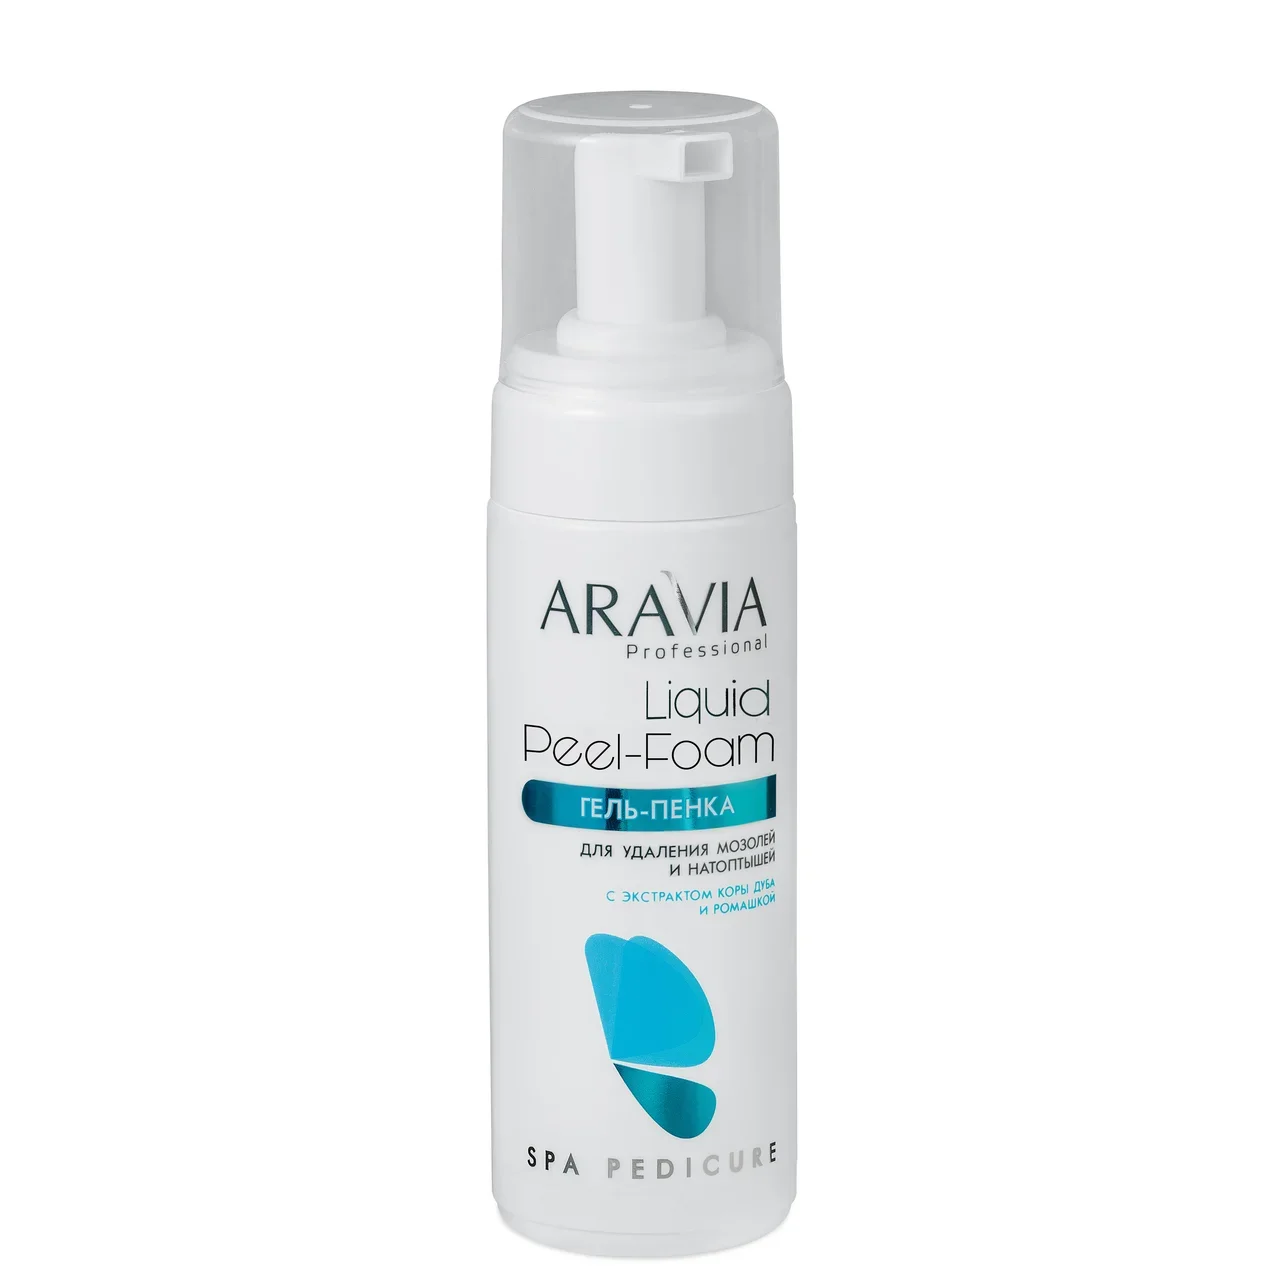 Aravia Professional Гель-пенка для удаления мозолей и натоптышей Liquid Peel-Foam, 160 мл (Aravia Professional) от Socolor